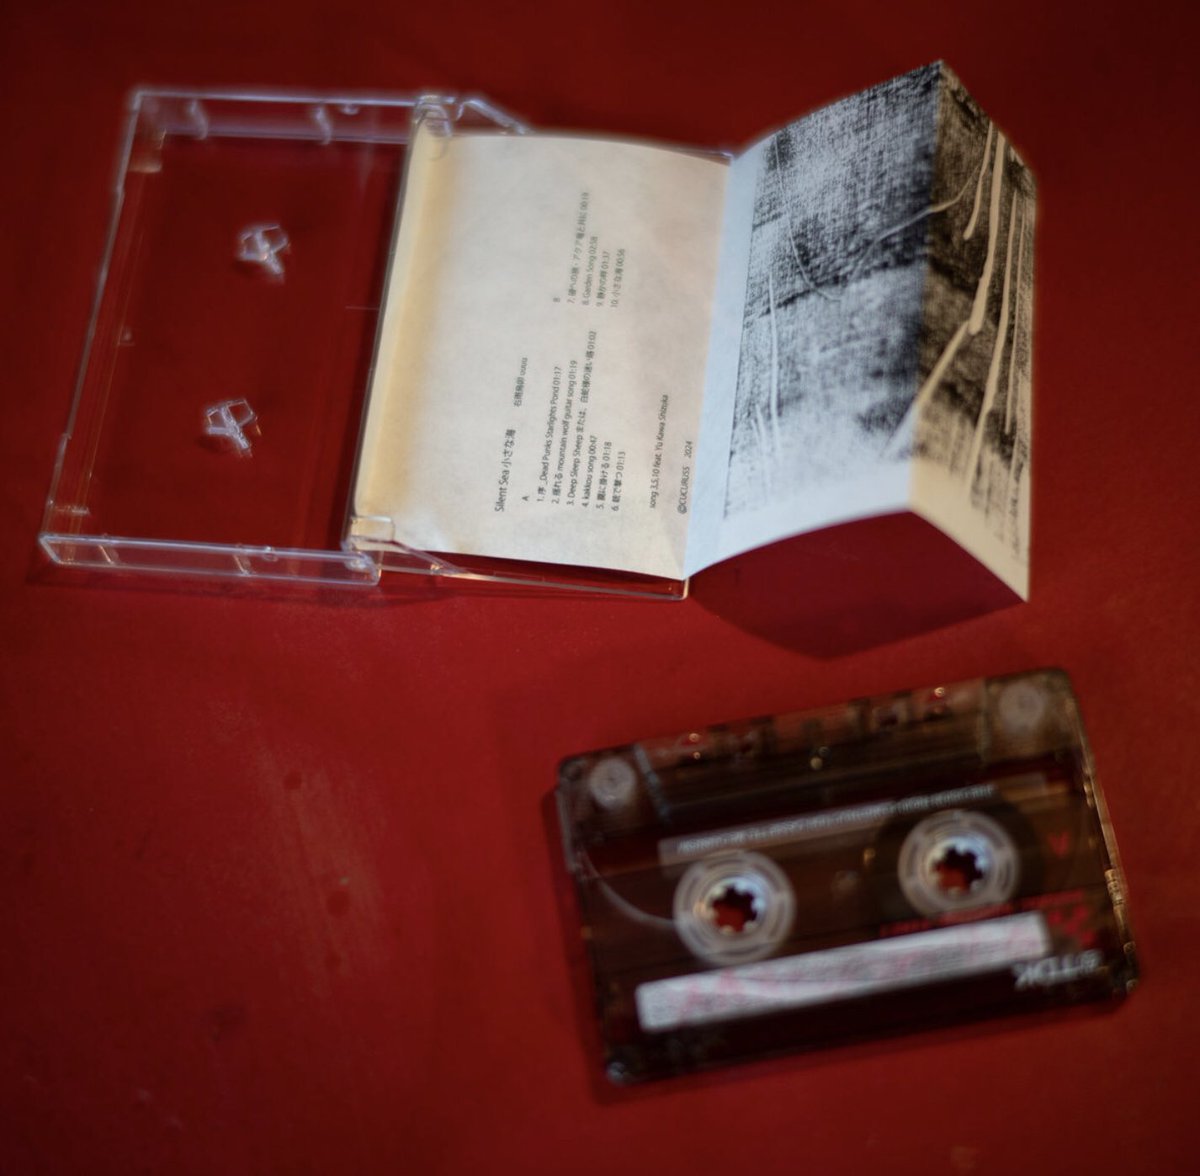 先月にリリースされた、右雨烏卯 uuuu『Silent Sea 小さな海』のカセットテープの販売が始まりました。 完全手作りで一点一点異なる風合いの版画作品も収録されています。少量生産のため、今のところ三点のみのリリースとなります。 cucuruss.bandcamp.com/album/silent-s…